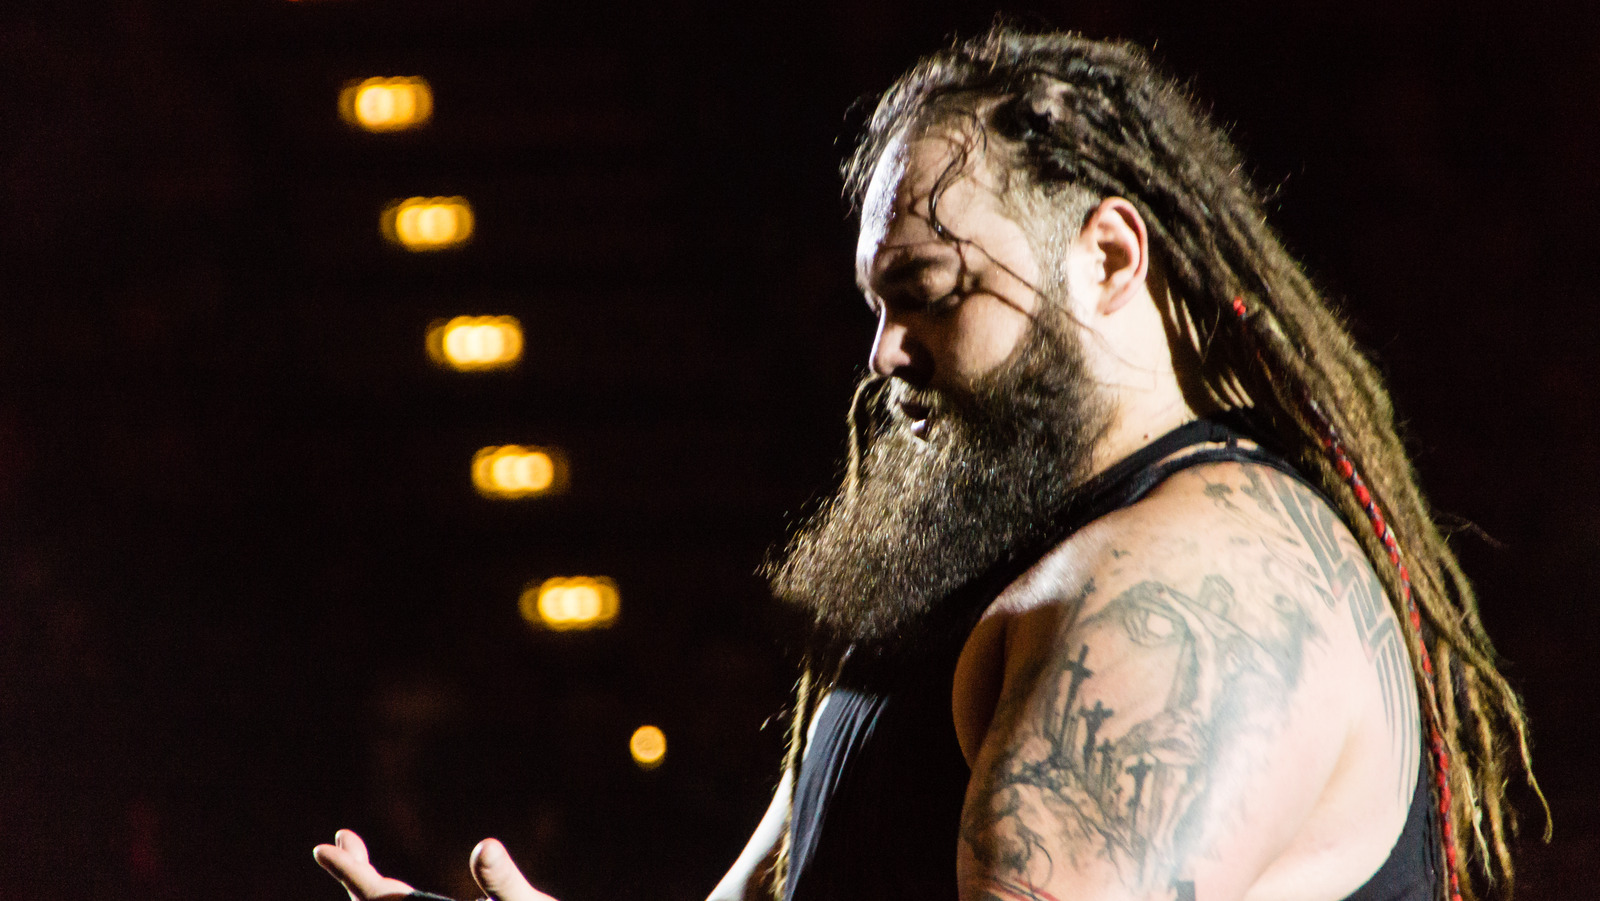 La estrella de la WWE Bayley recuerda al 'irremplazable' Windham Rotunda, también conocido como Bray Wyatt